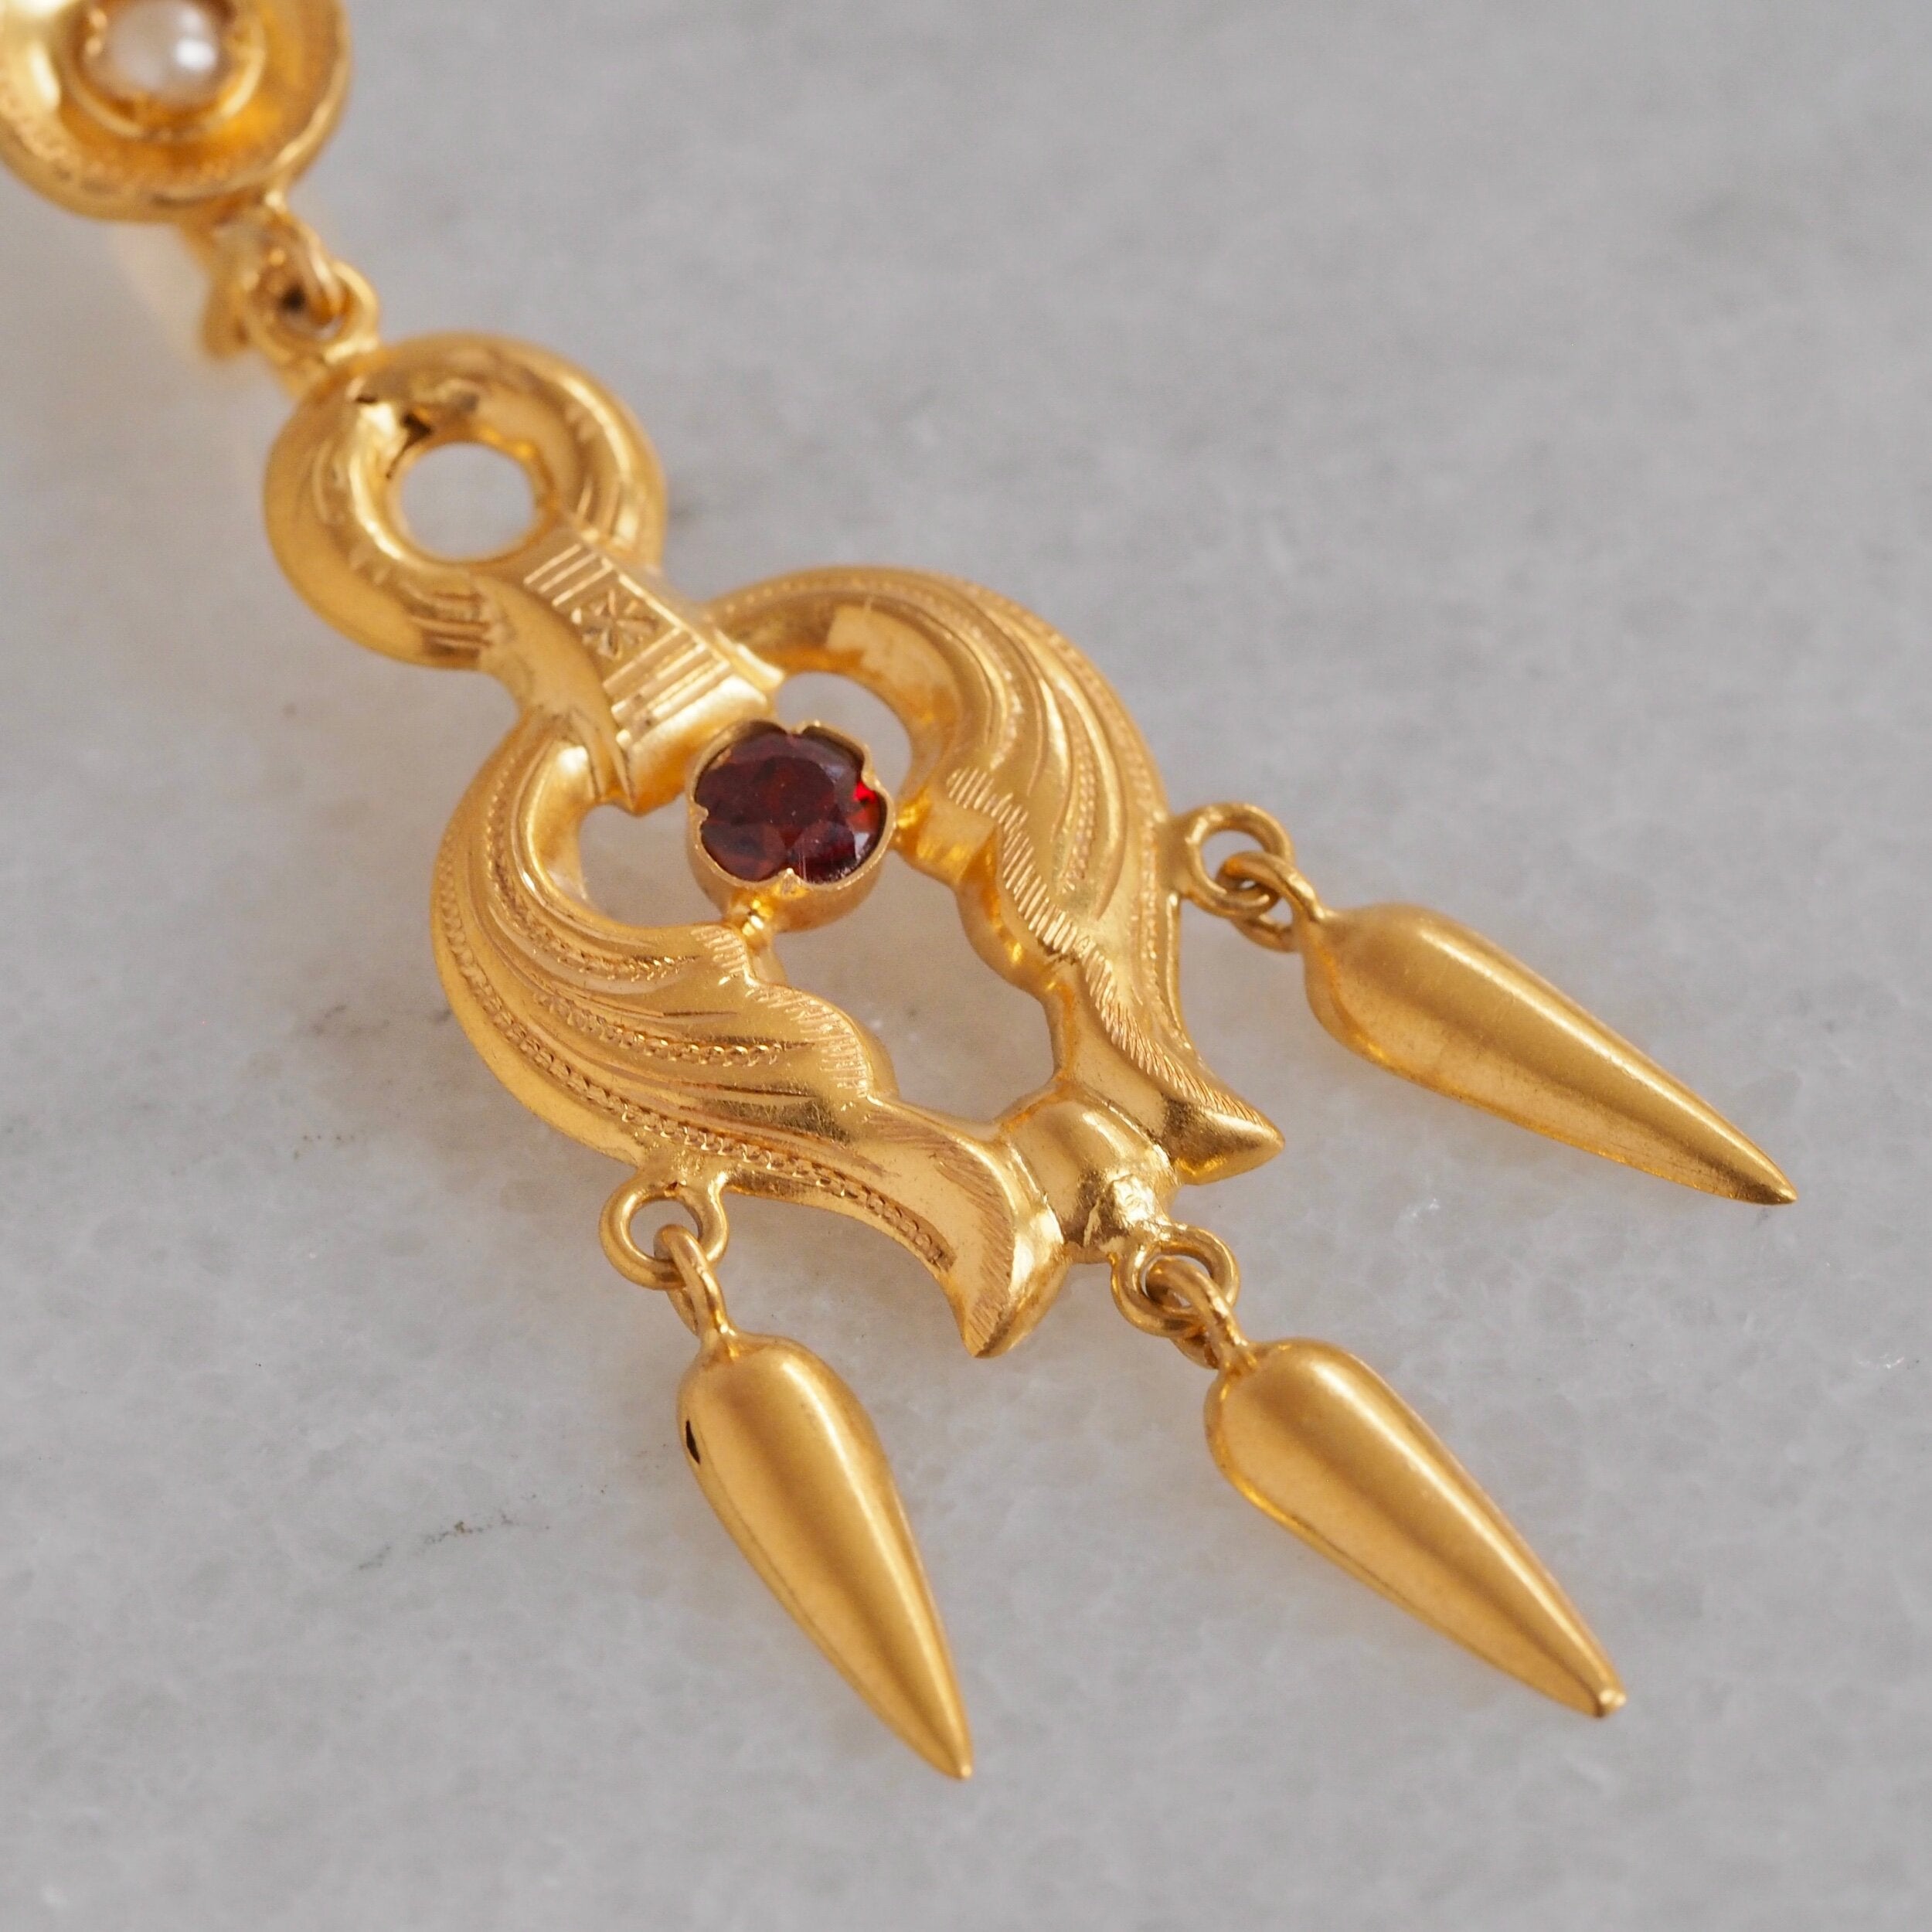 Antique Art Nouveau Portuguese 19k Gold Garnet and Pearl Earrings